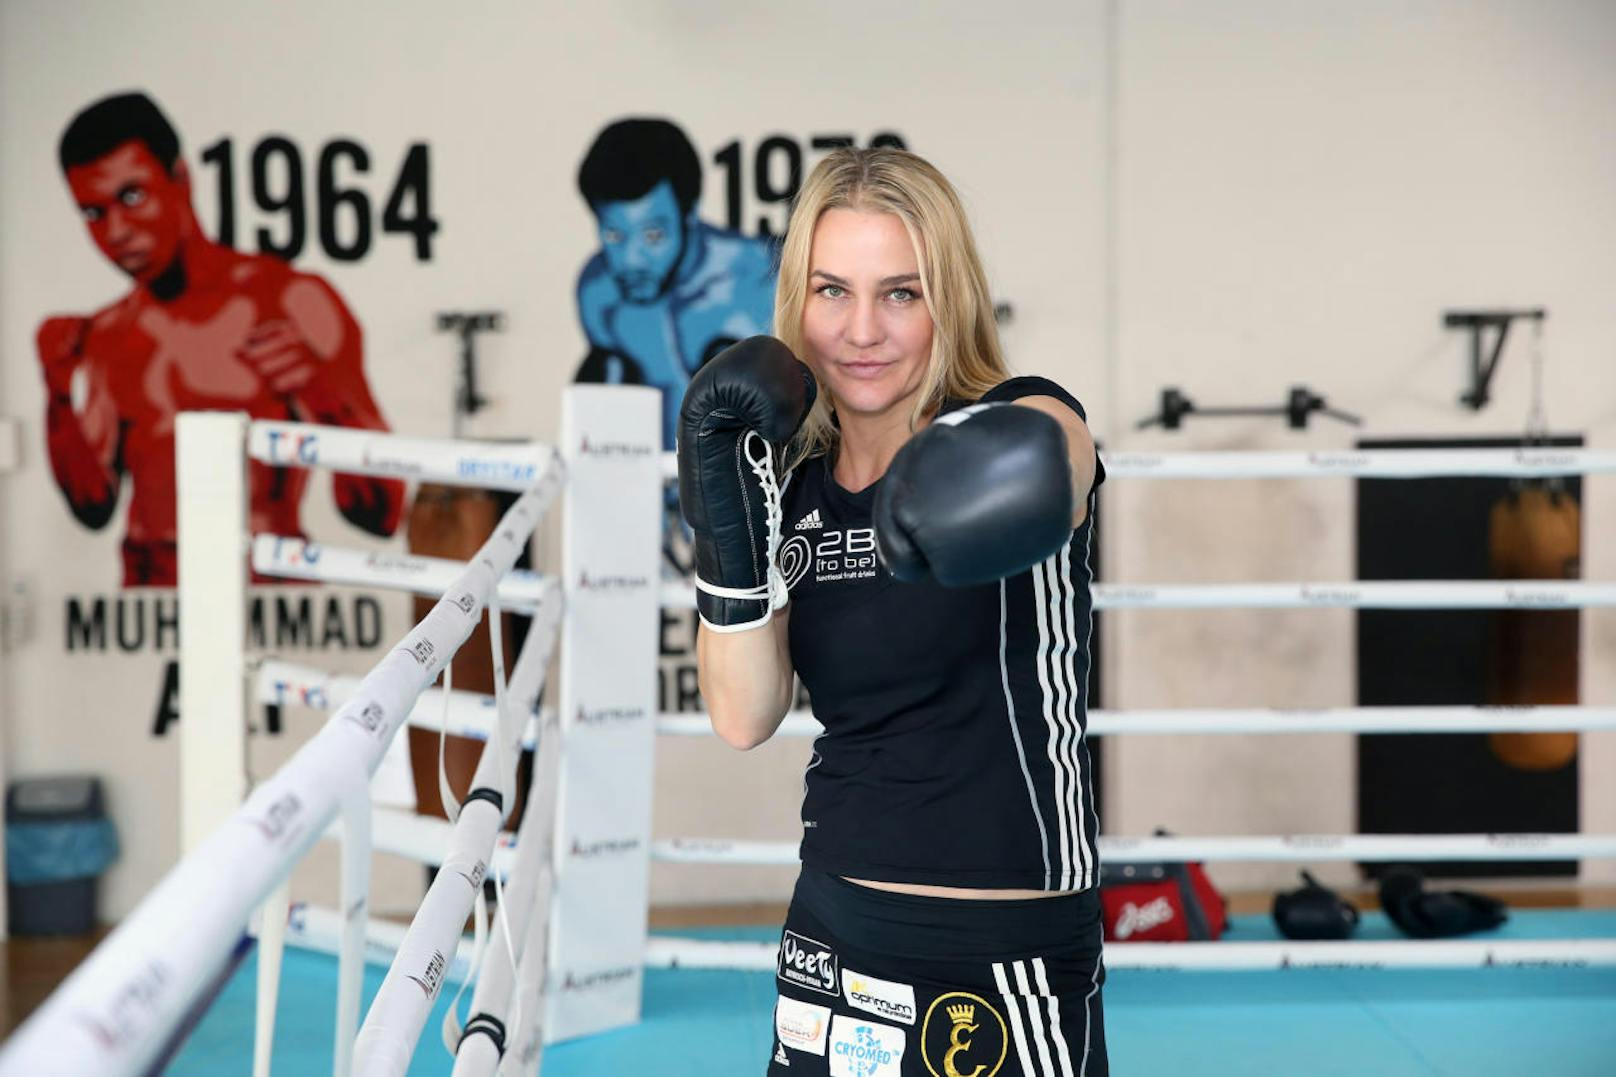 Nicole Wesner zog aus Deutschland nach Wien. Heute sieht sie Österreichs Hauptstadt als ihre Heimat an: "Hier habe ich Boxen gelernt. Und es ist super, in meiner Heimatstadt boxen zu können."